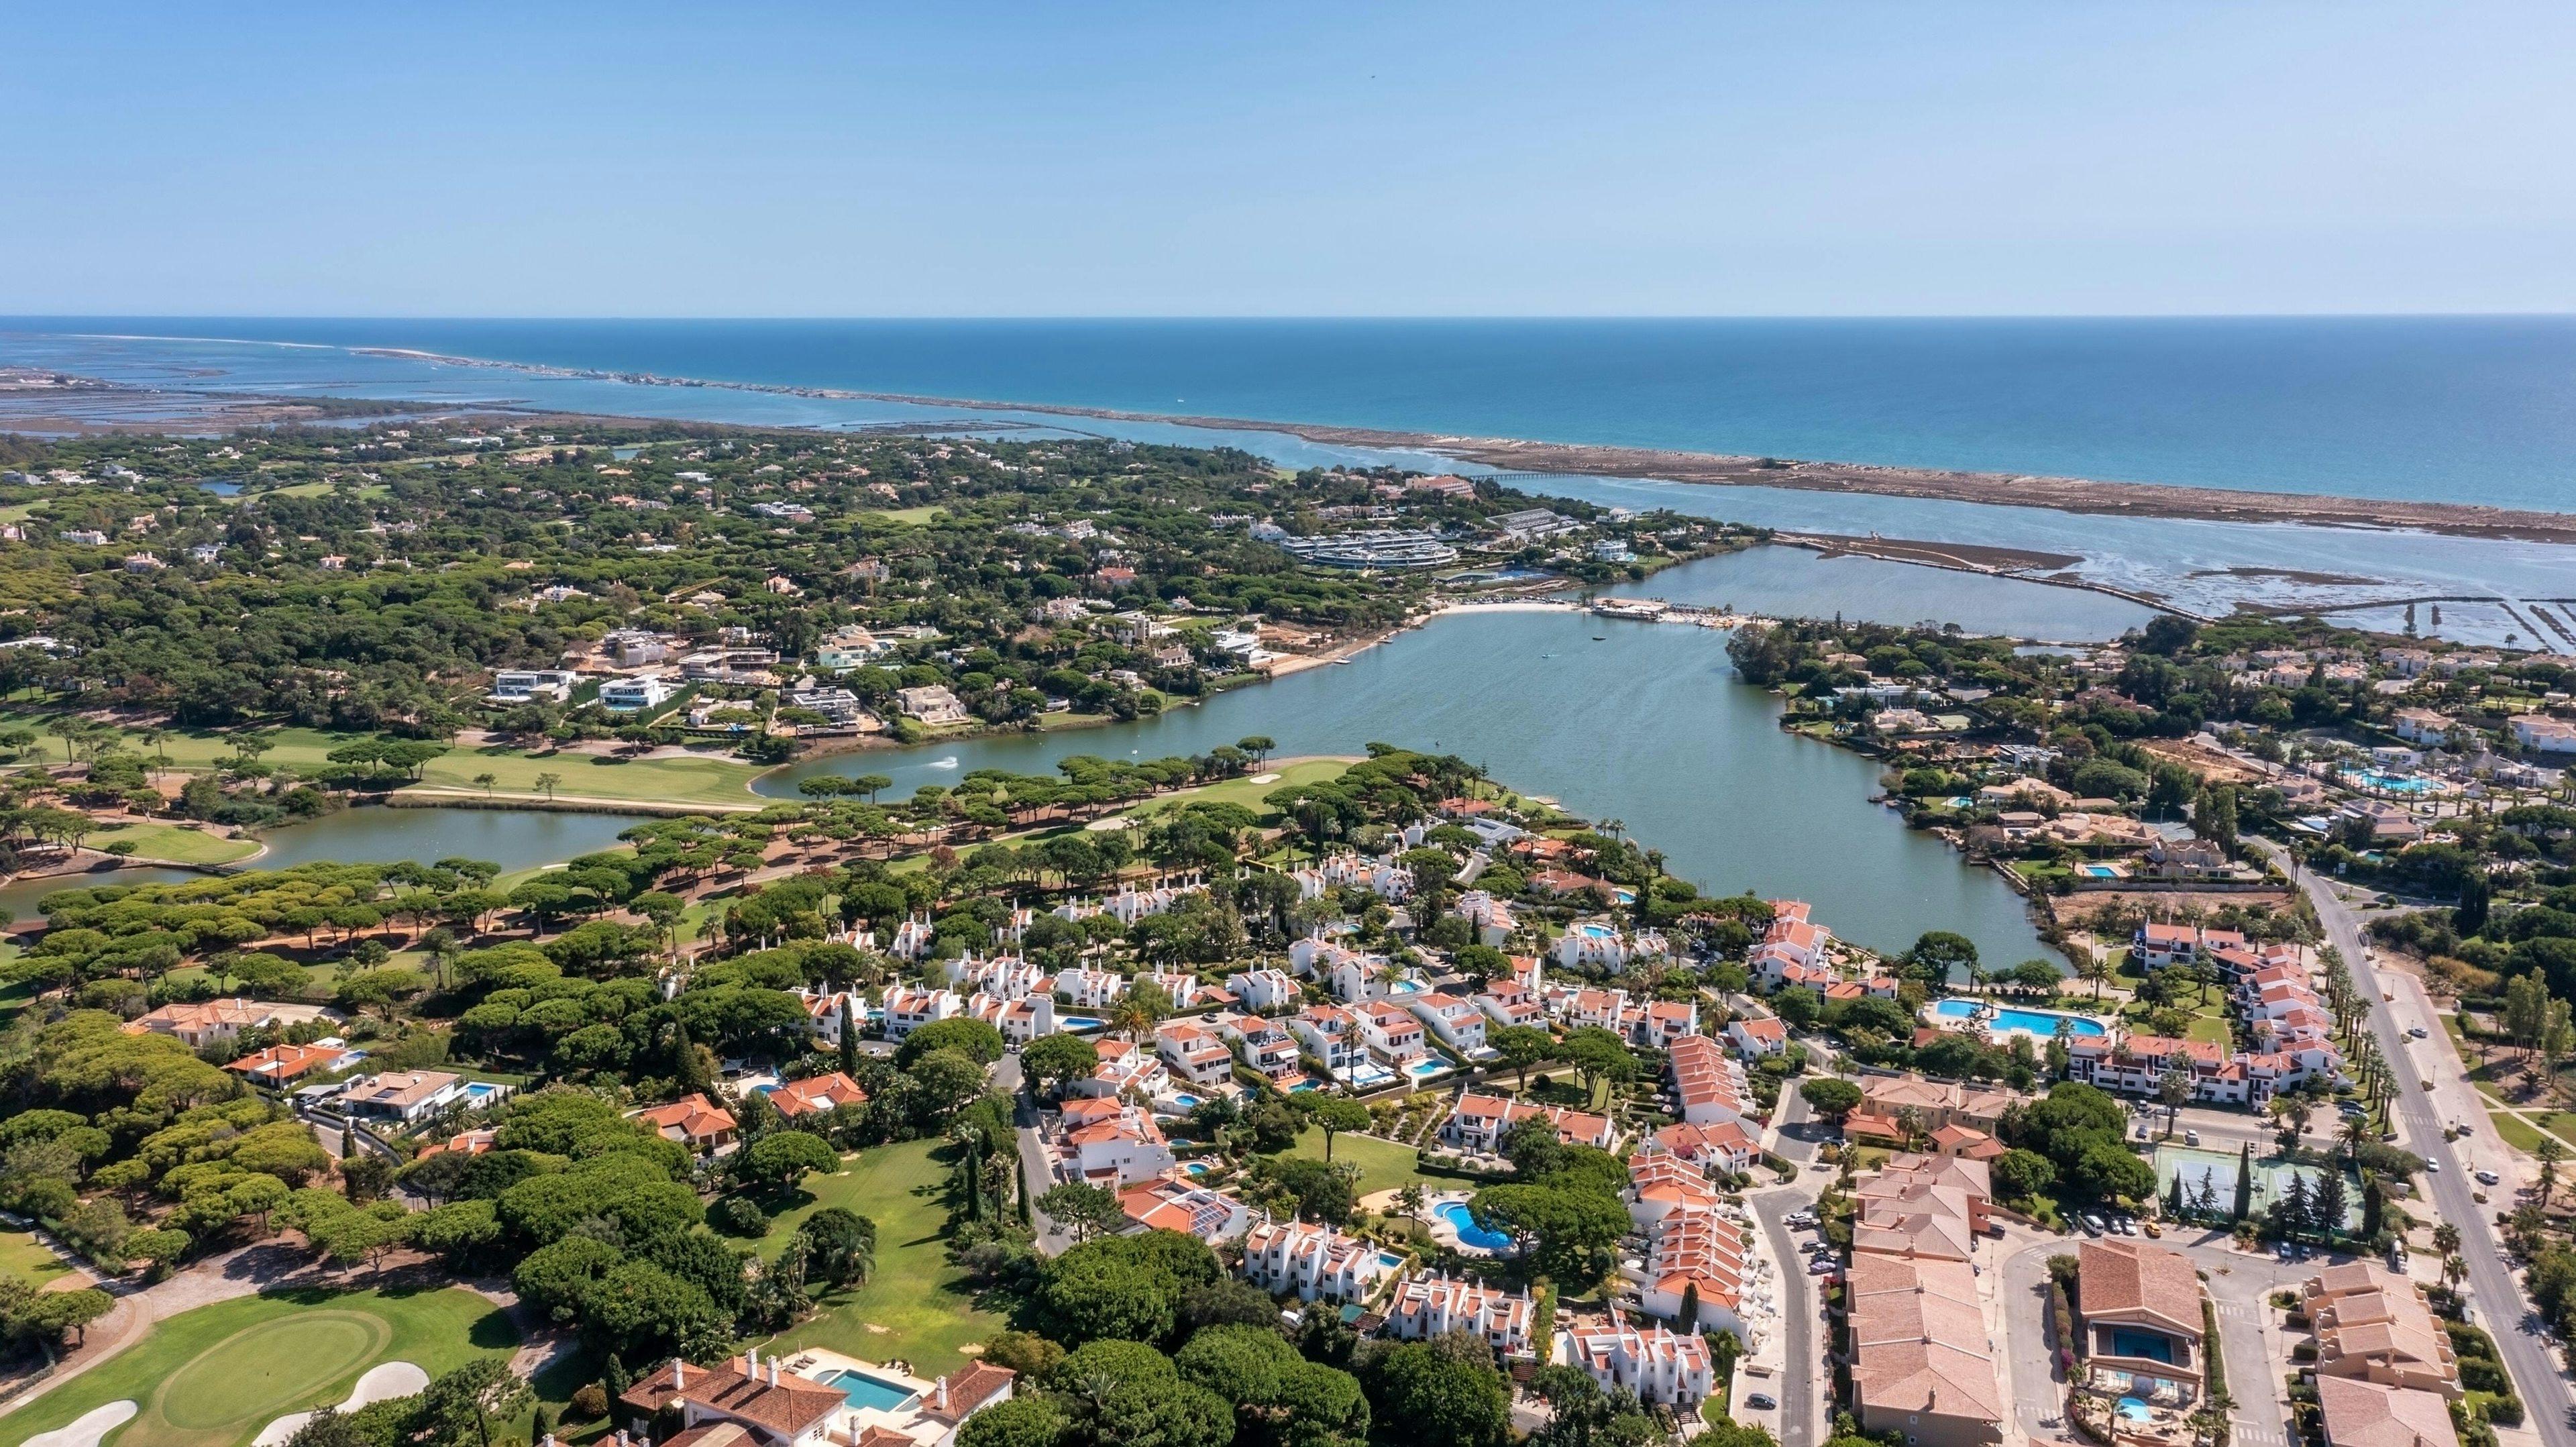 Vista panorâmica da costa algarvia apresentando cidades movimentadas justapostas ao oceano tranquilo.